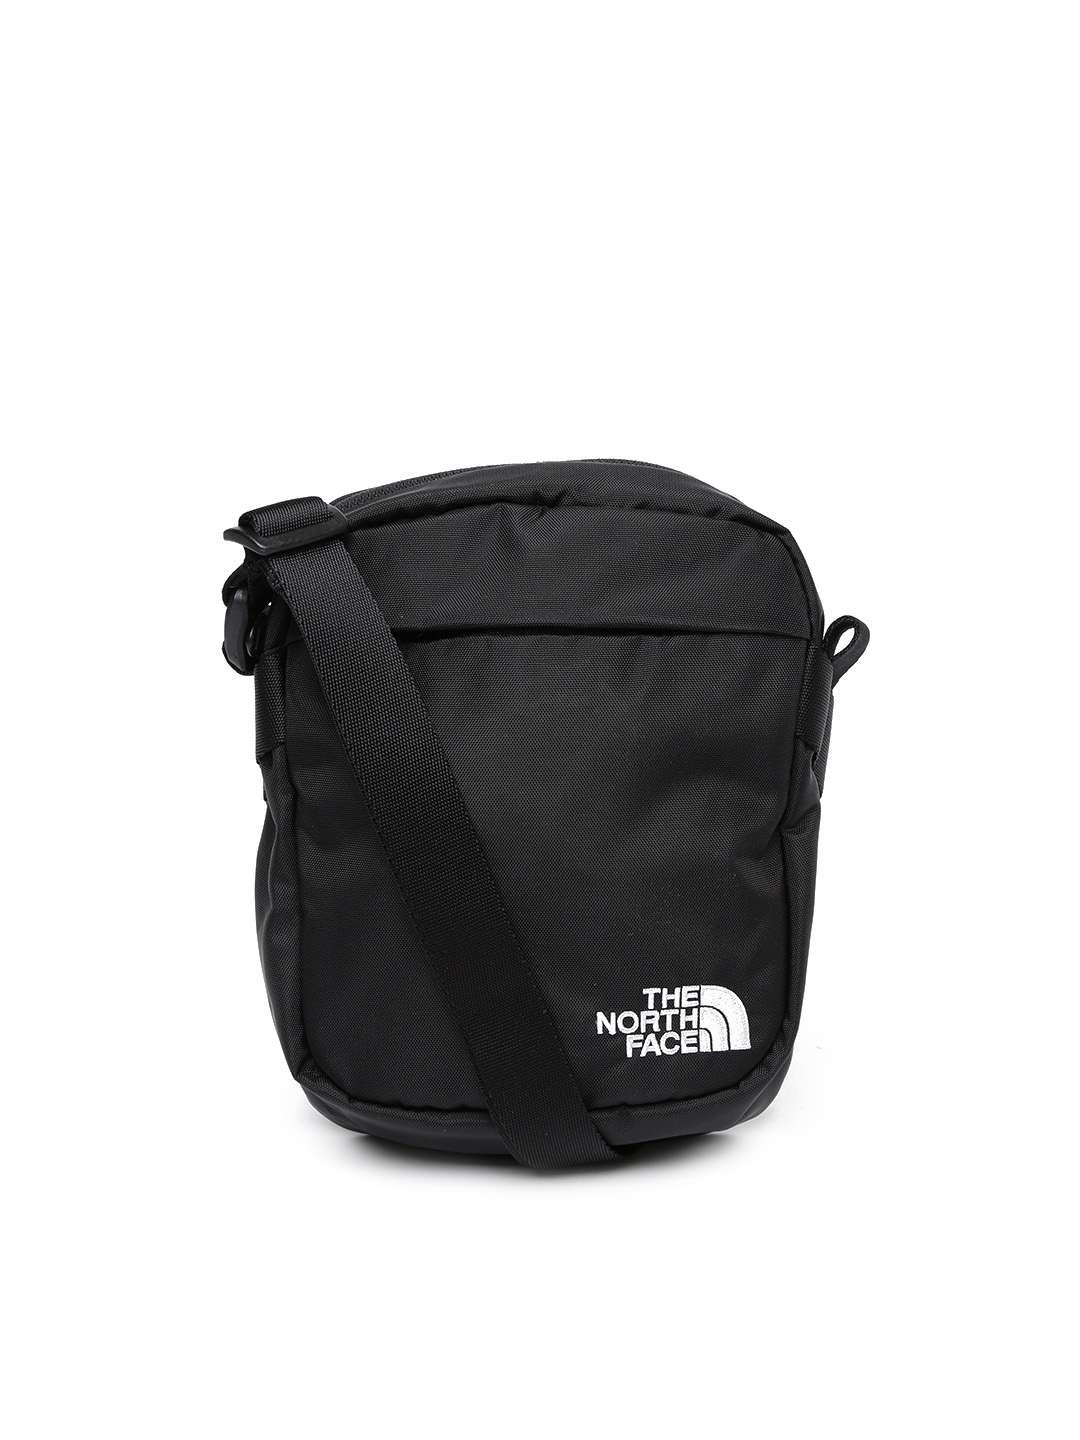 Buy The North Face Unisex Black Solid Messenger Bag - Messenger Bag for ...